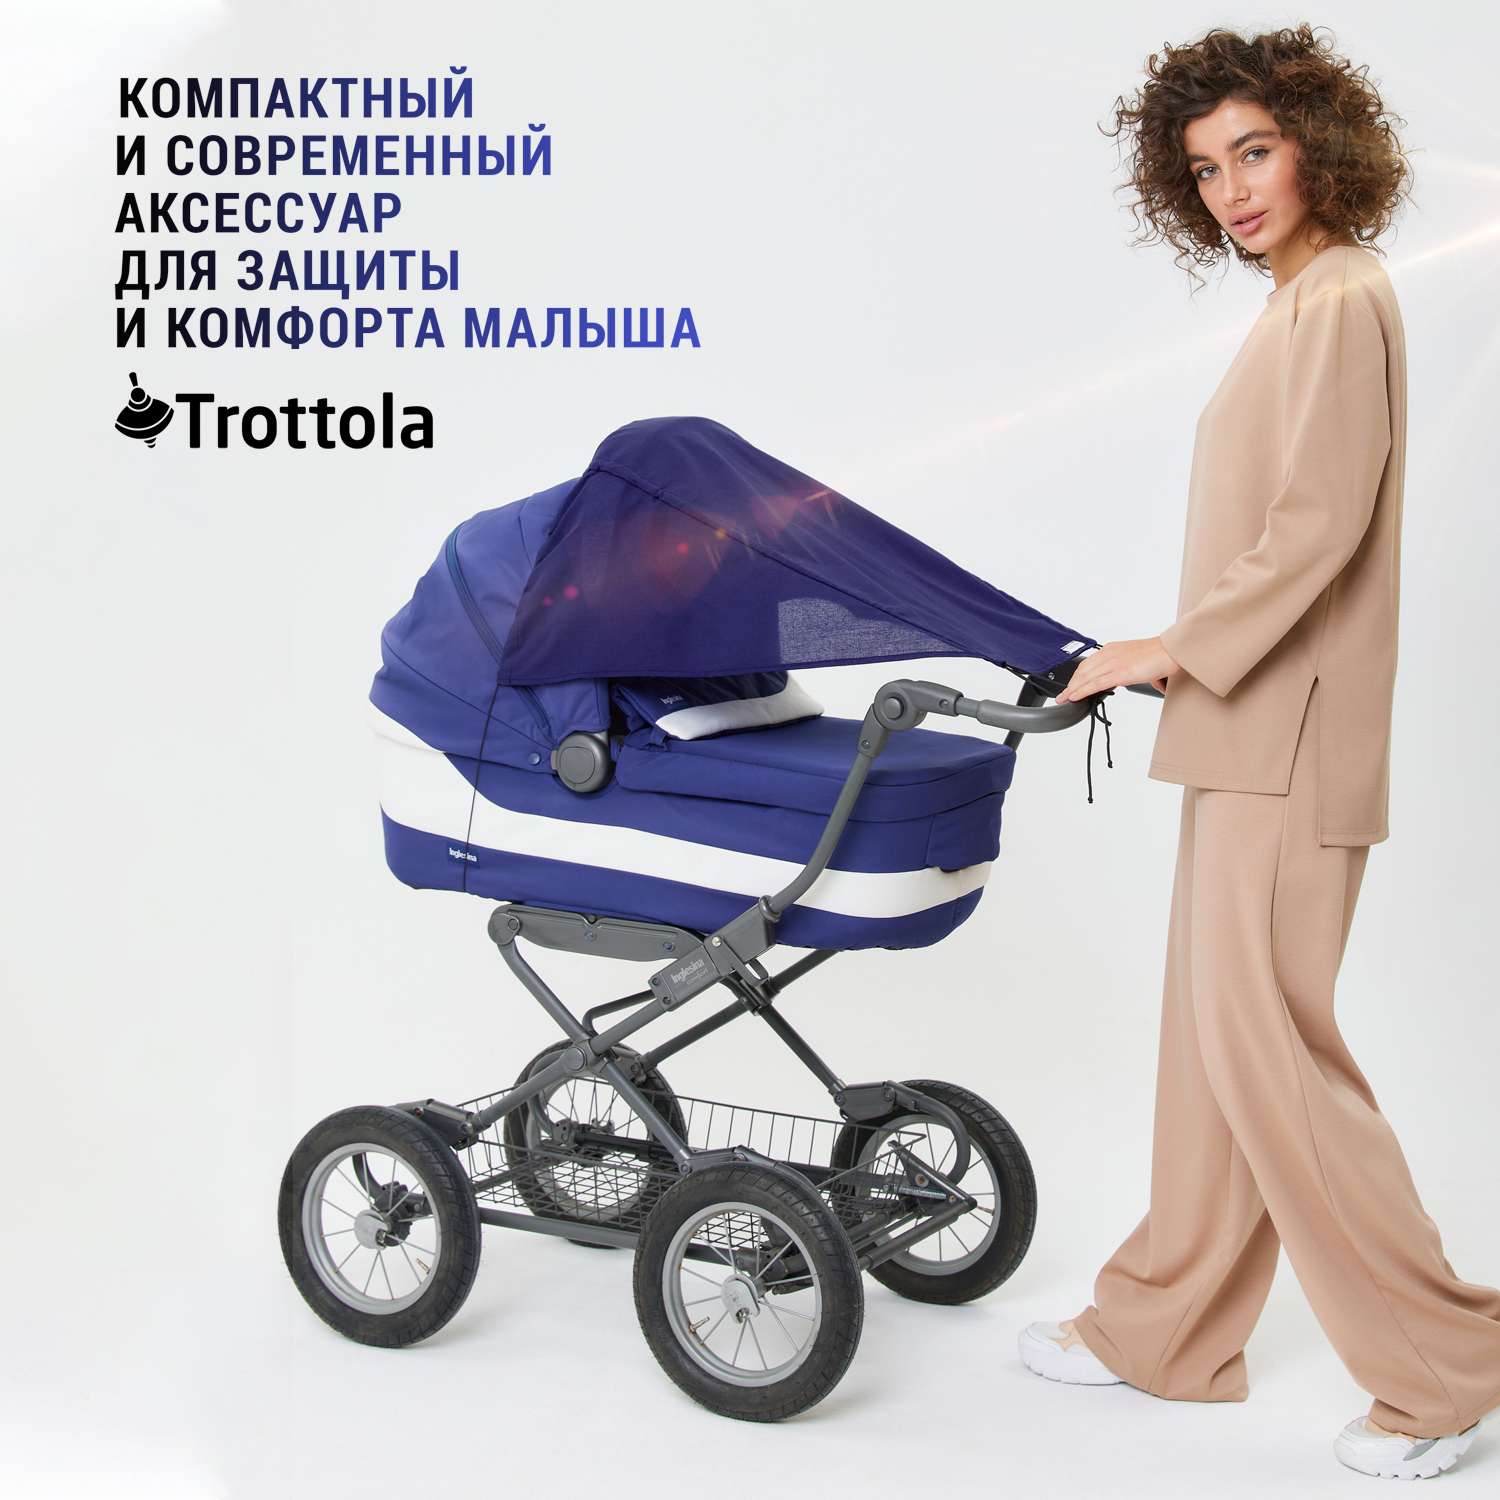 Купить детскую коляску в Москве | Официальный интернет-магазин детских колясок Silver Cross